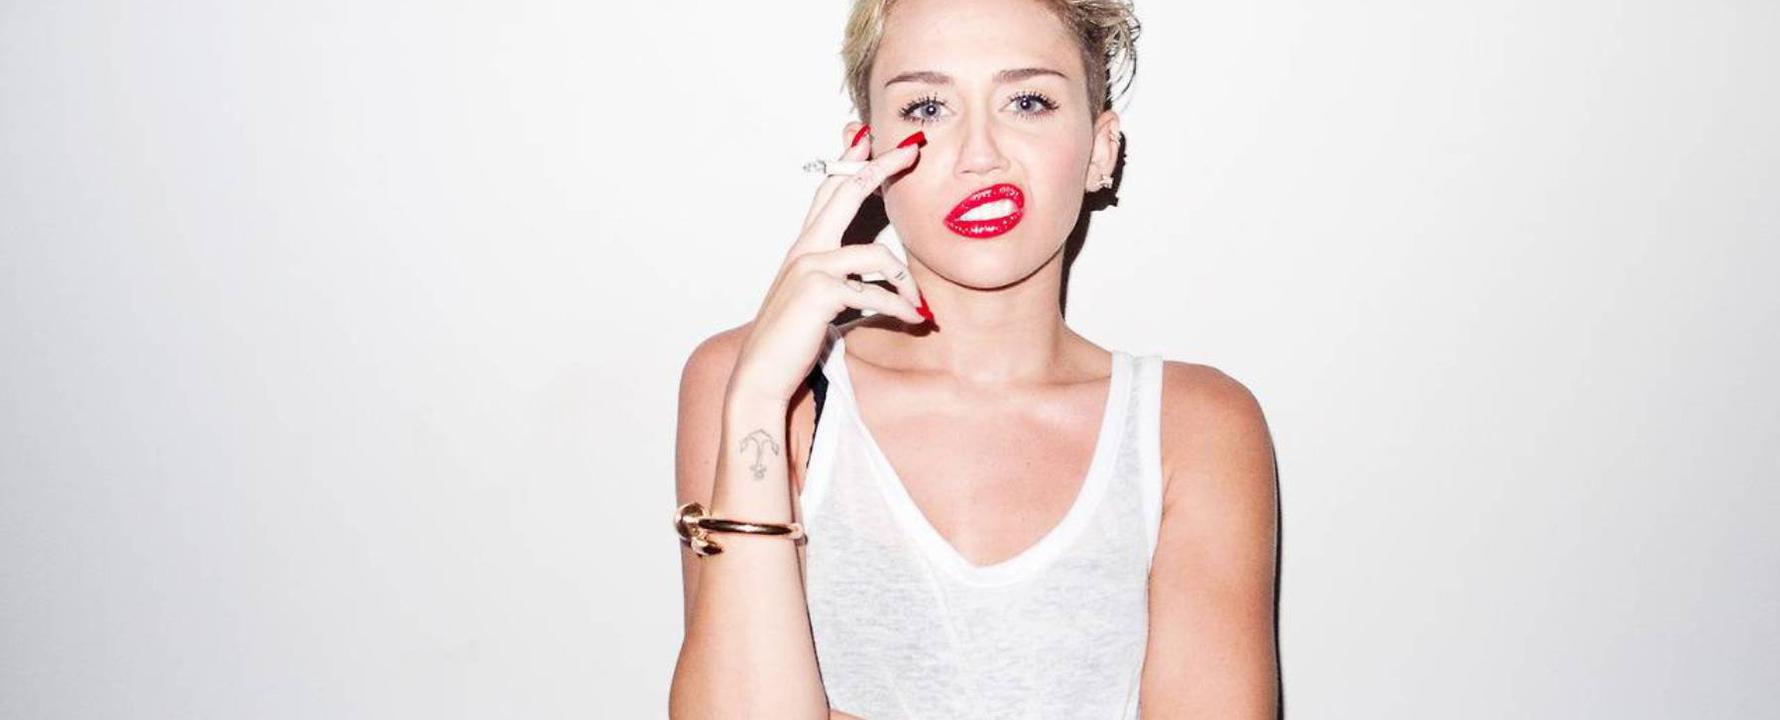 Fotografia promocional de Miley Cyrus.